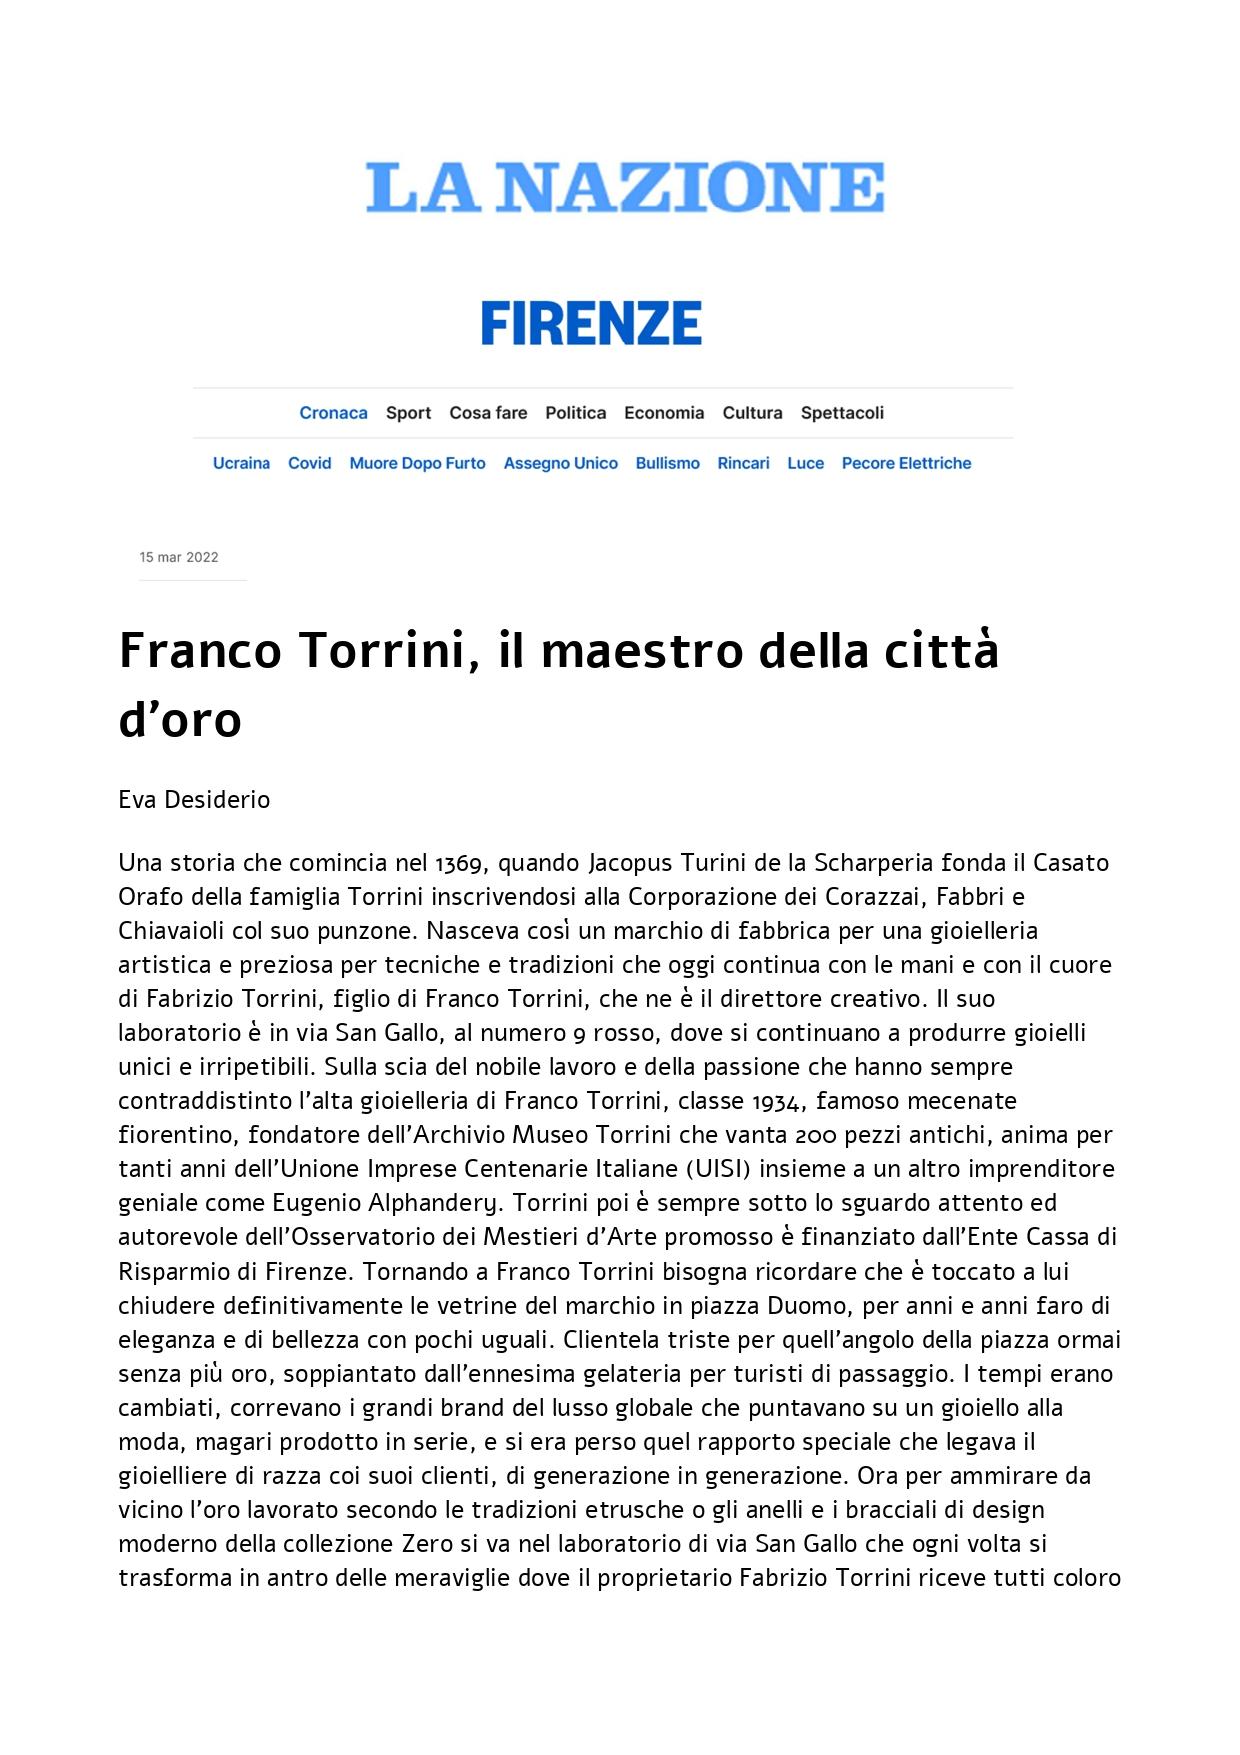 La Nazione Franco Torrini il maestro della città doro 15 marzo 2022 page 0001